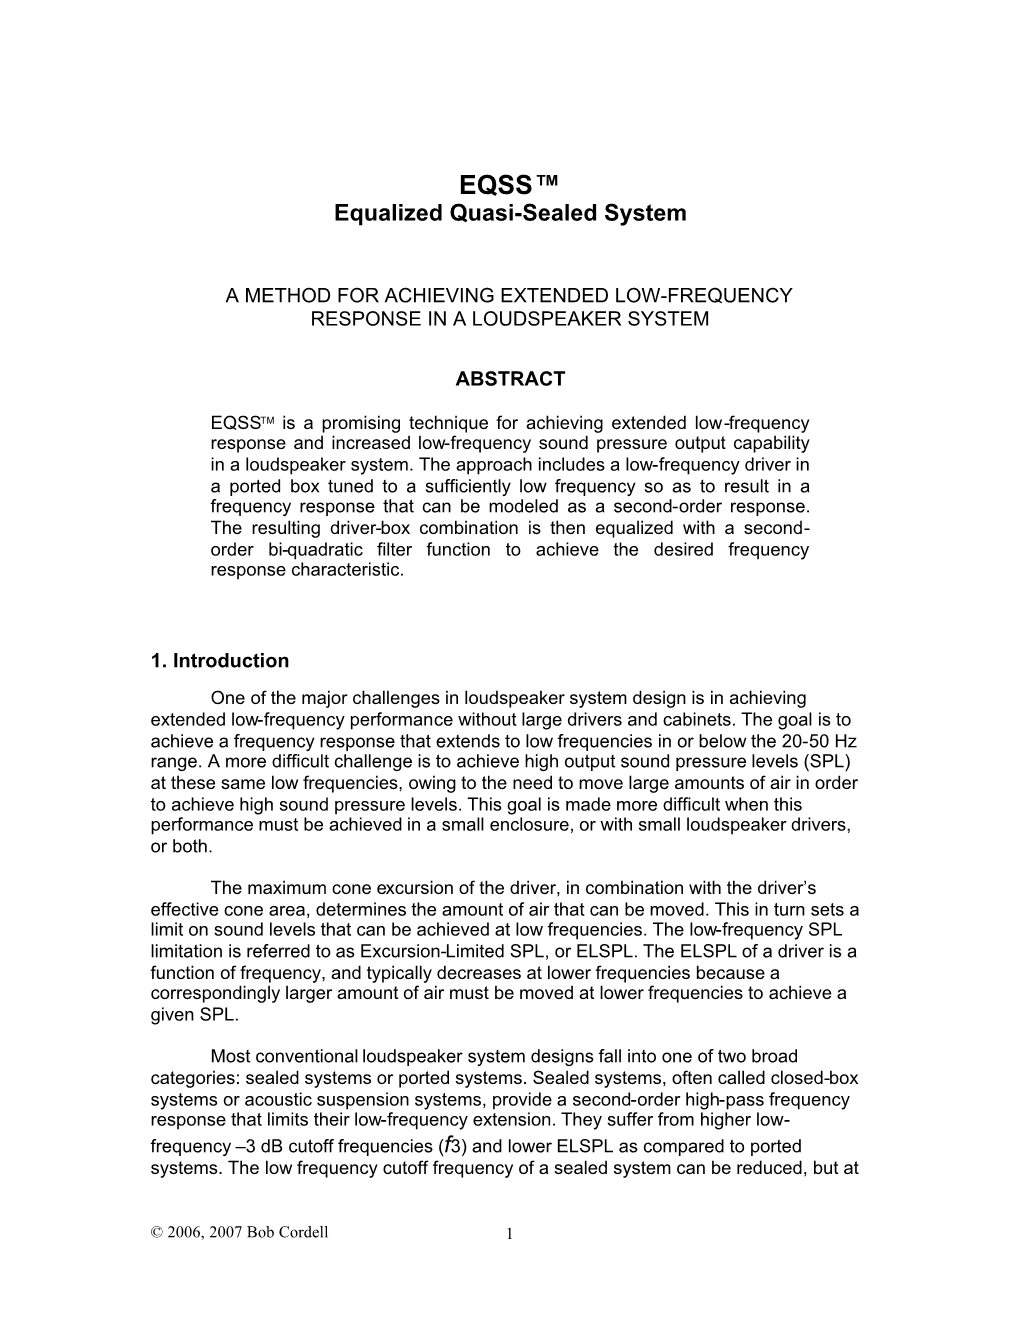 EQSS™ White Paper